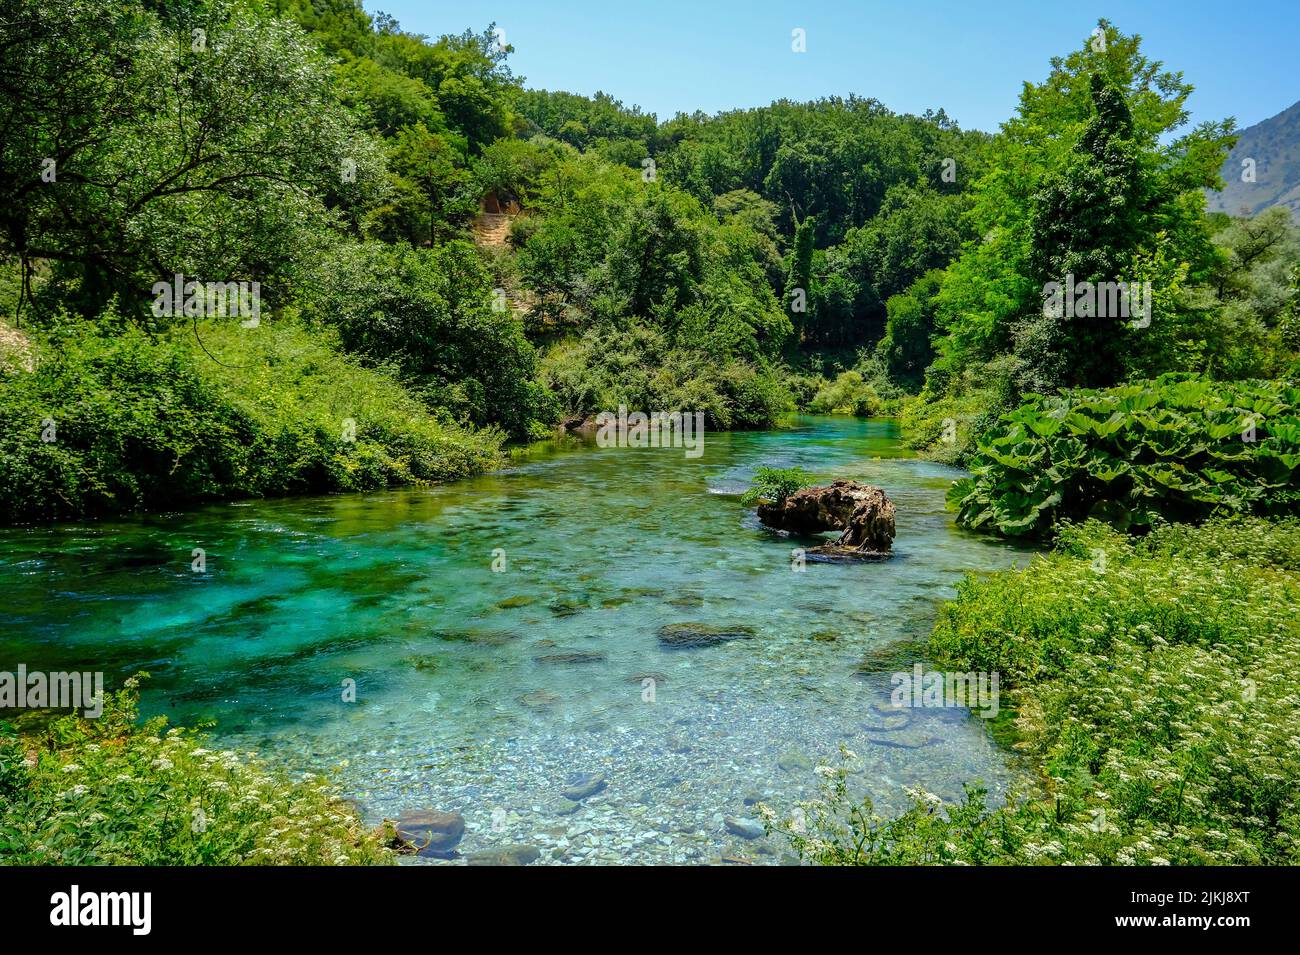 Muzina, Albania - Syri i Kaltër, OJO AZUL, con 6 ö³/s la fuente de agua más abundante del país, se encuentra a medio camino entre las ciudades más grandes de Saranda en la costa y Gjirokastra en el interior. Foto de stock